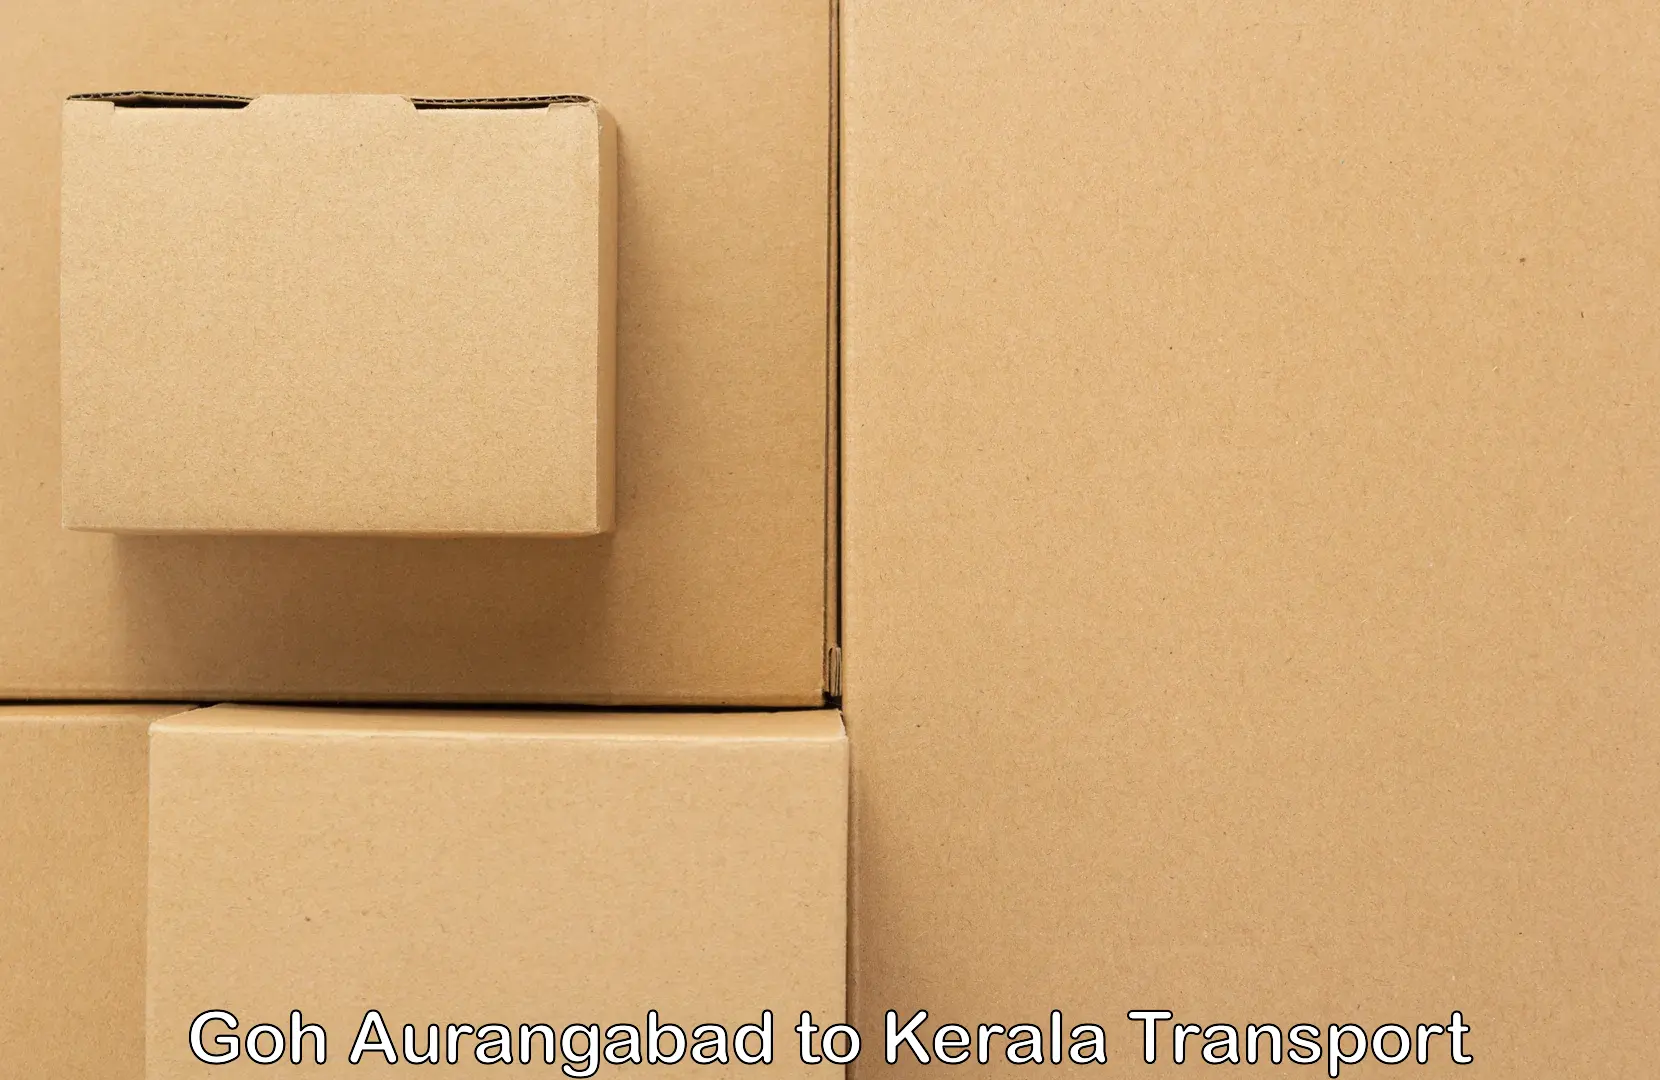 Shipping partner Goh Aurangabad to Alappuzha